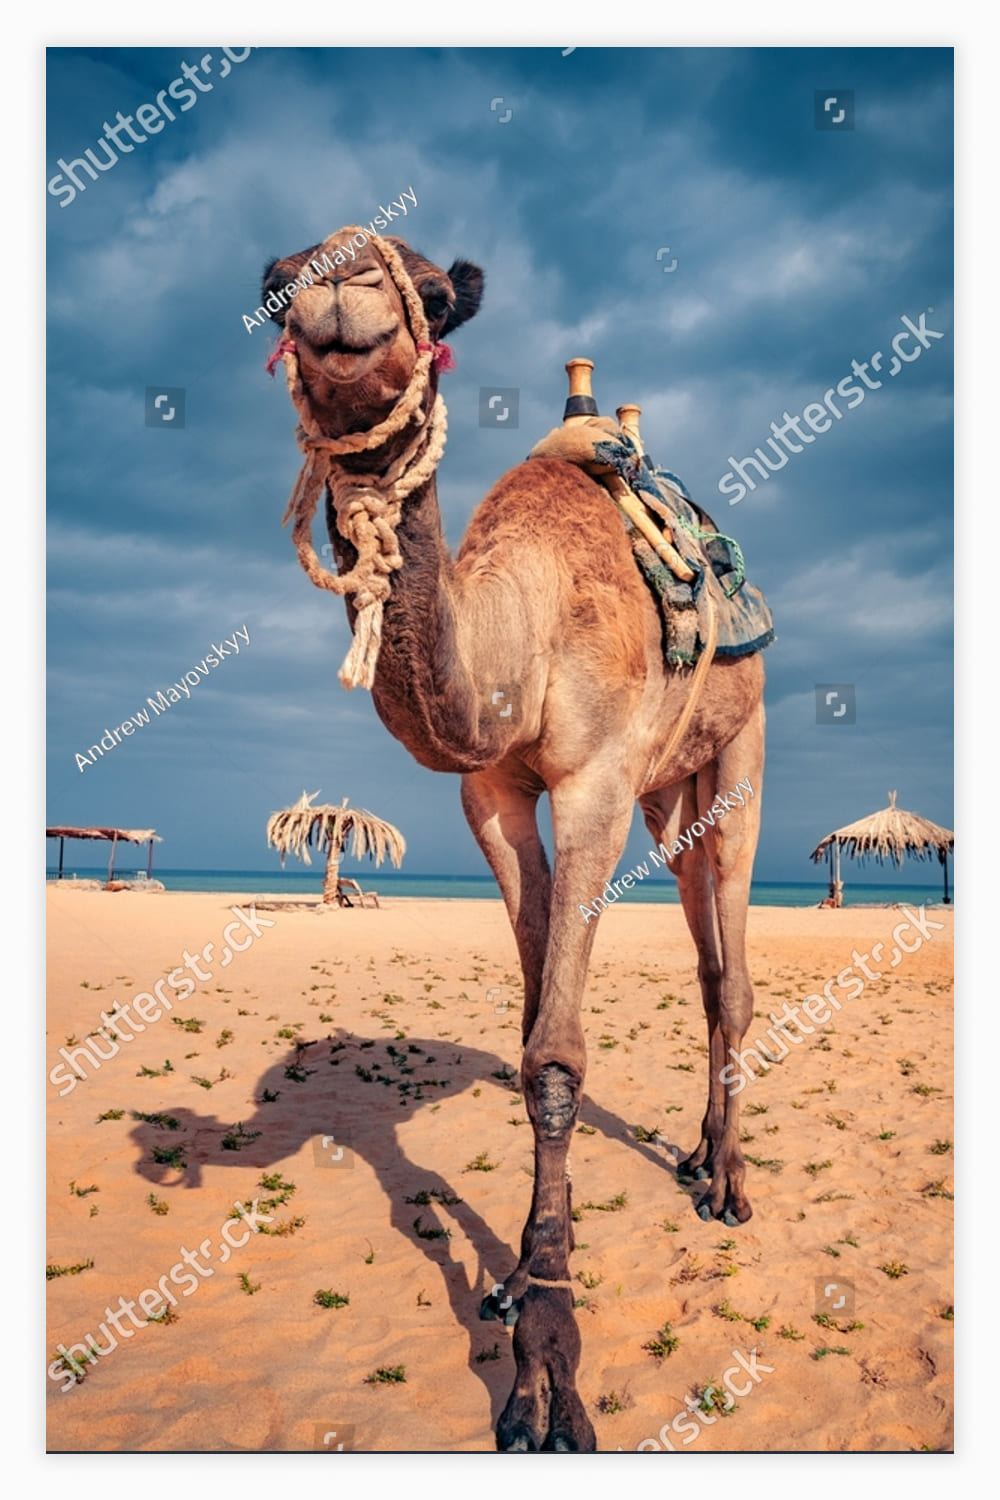 Camel on the sandy beach in Egypt.